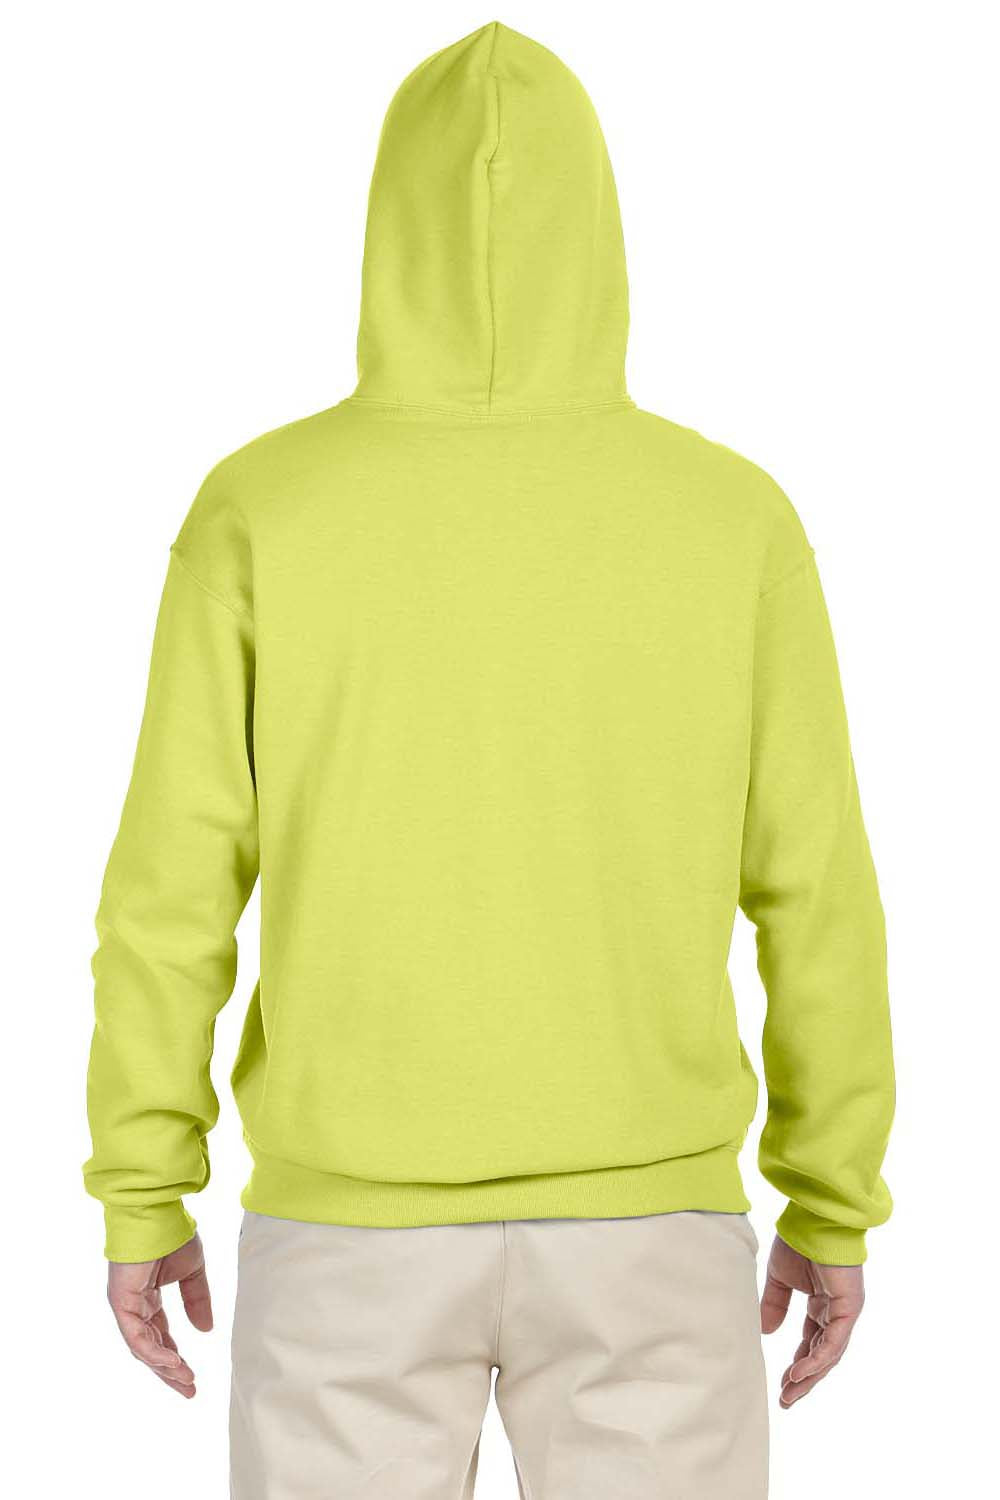 Jerzees 996 Mens NuBlend Fleece Hooded Sweatshirt Hoodie Safety Green Back